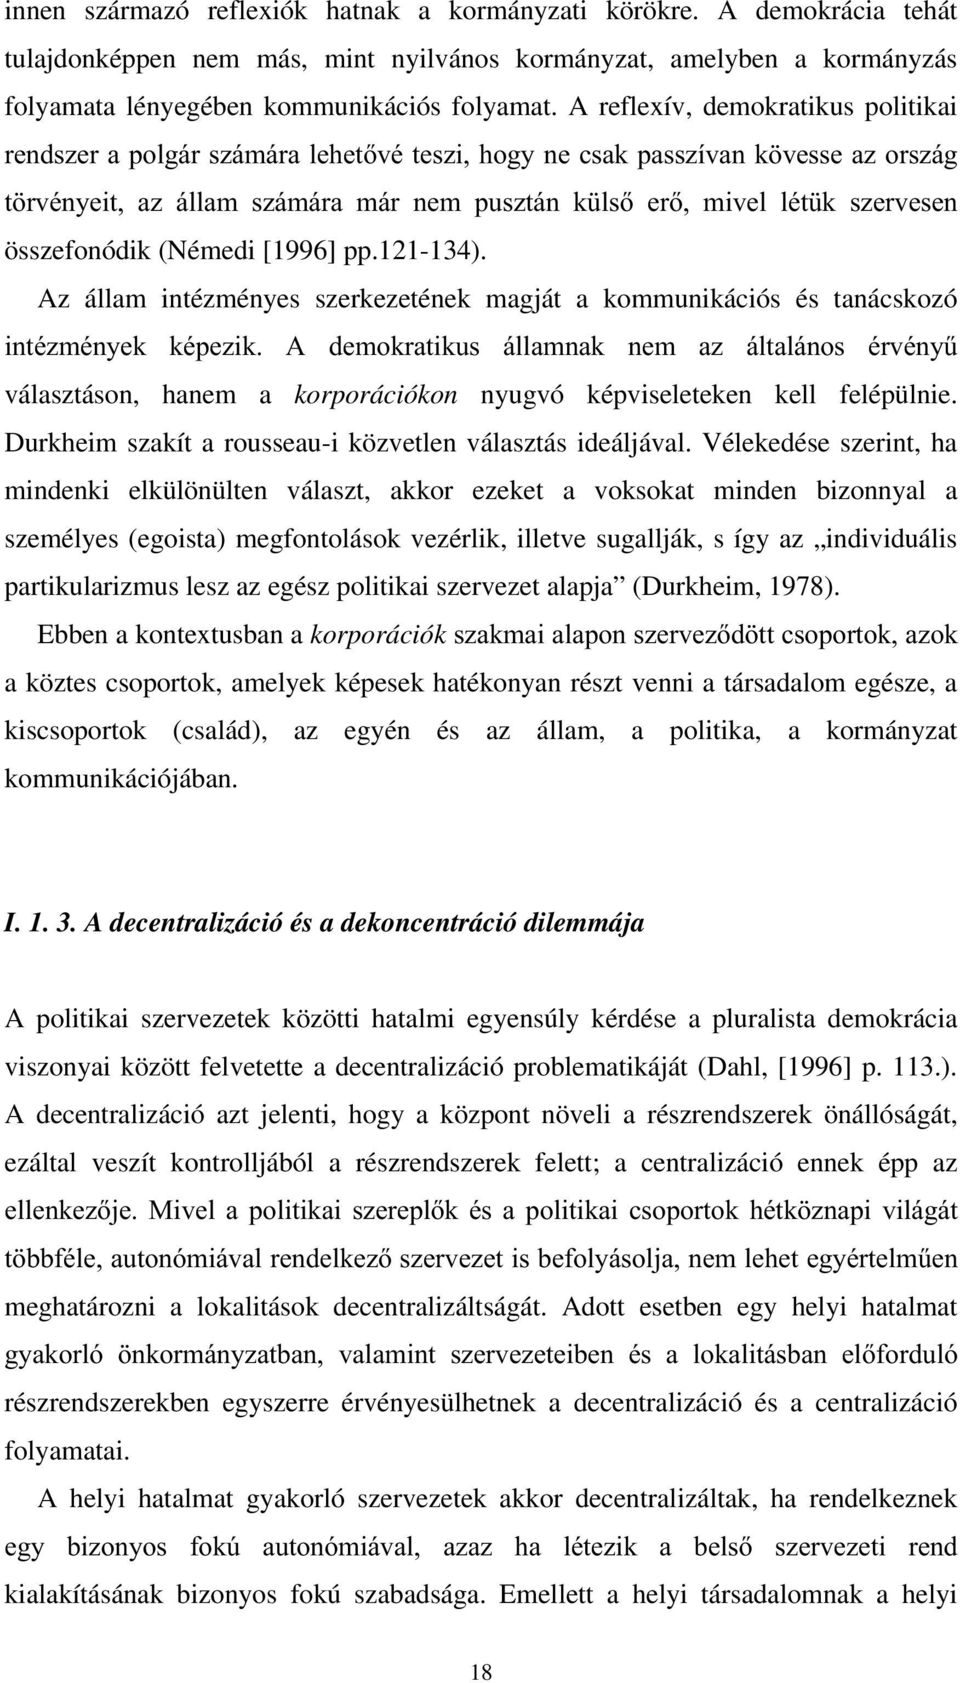 [1996] pp.121-134).